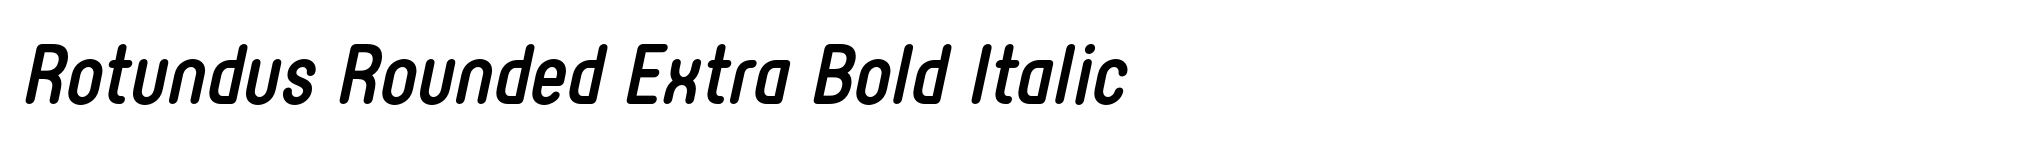 Rotundus Rounded Extra Bold Italic image